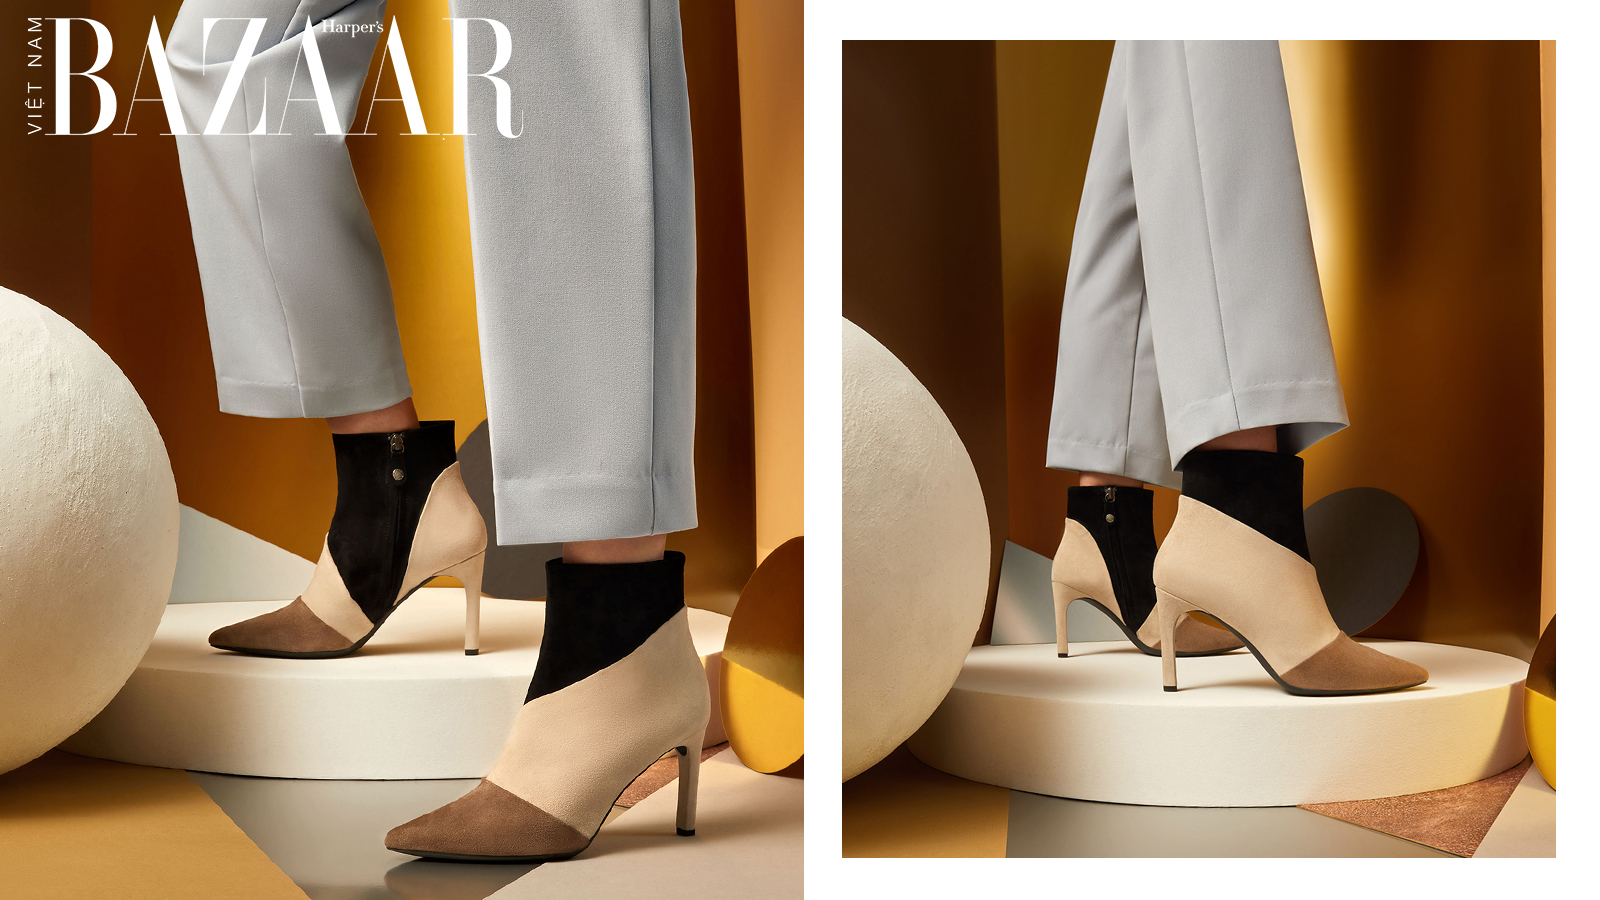 Harper's Bazaar_Geox ra mắt ankle boots thời thượng cho ngày hè_02